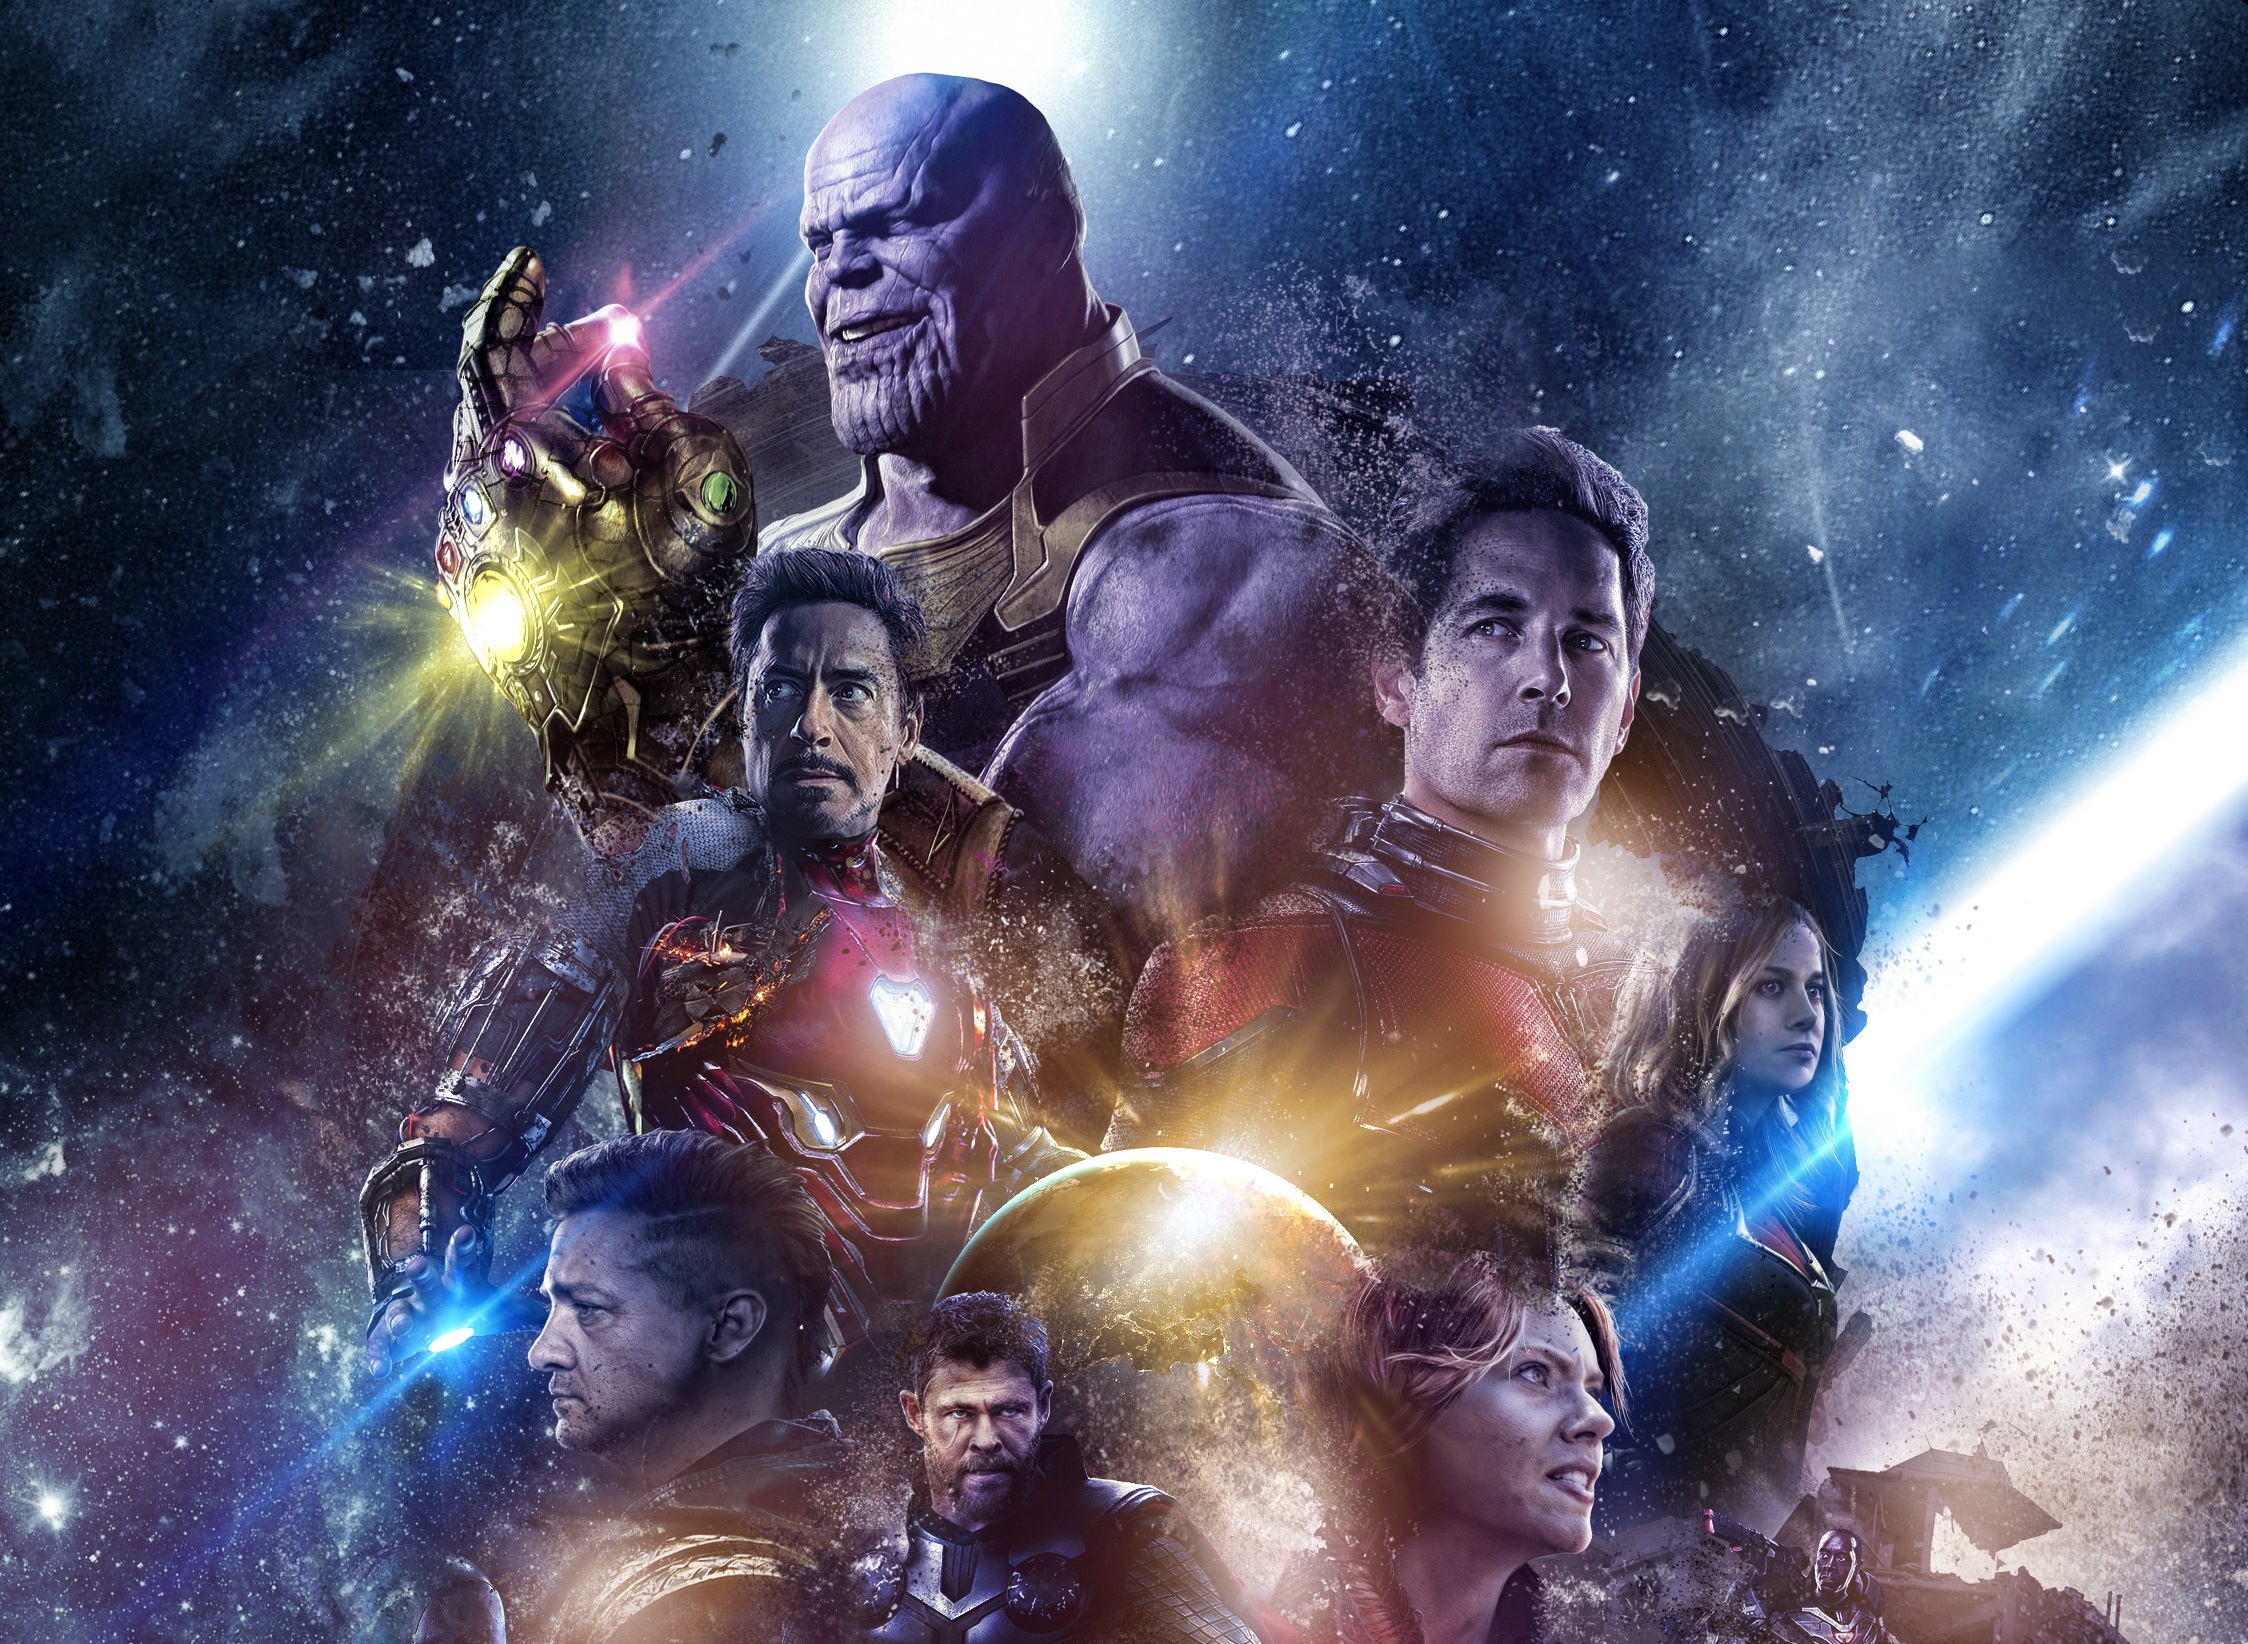 Avengers Infinity War Fan art Wallpapers  HD Wallpapers  ID 27953